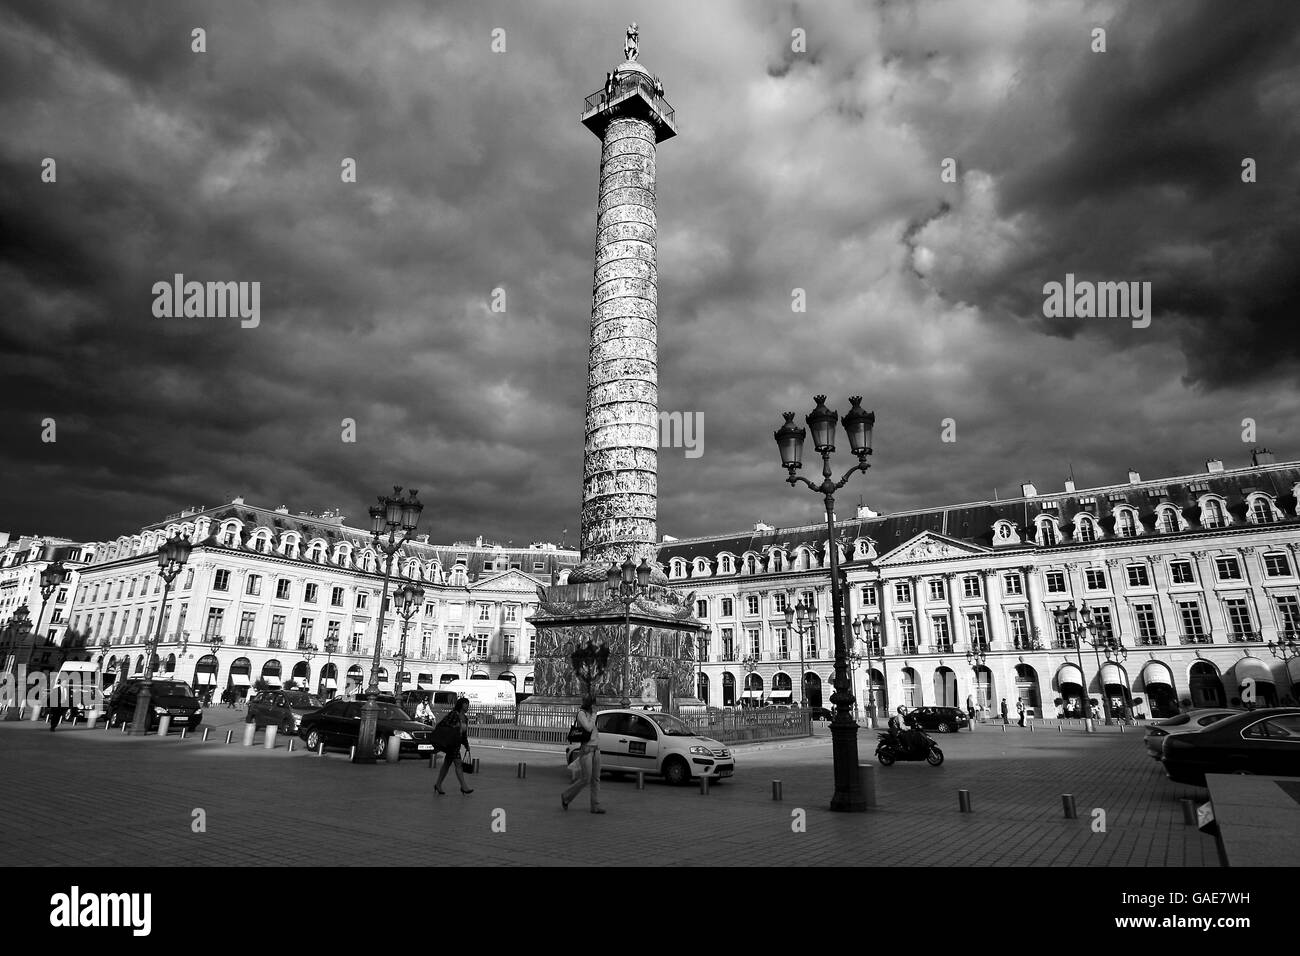 Eine allgemeine Ansicht der Vendome Spalte am Place Vendome, Paris, Frankreich. Dies ist ein Denkmal für Napoleon Siege. Stockfoto